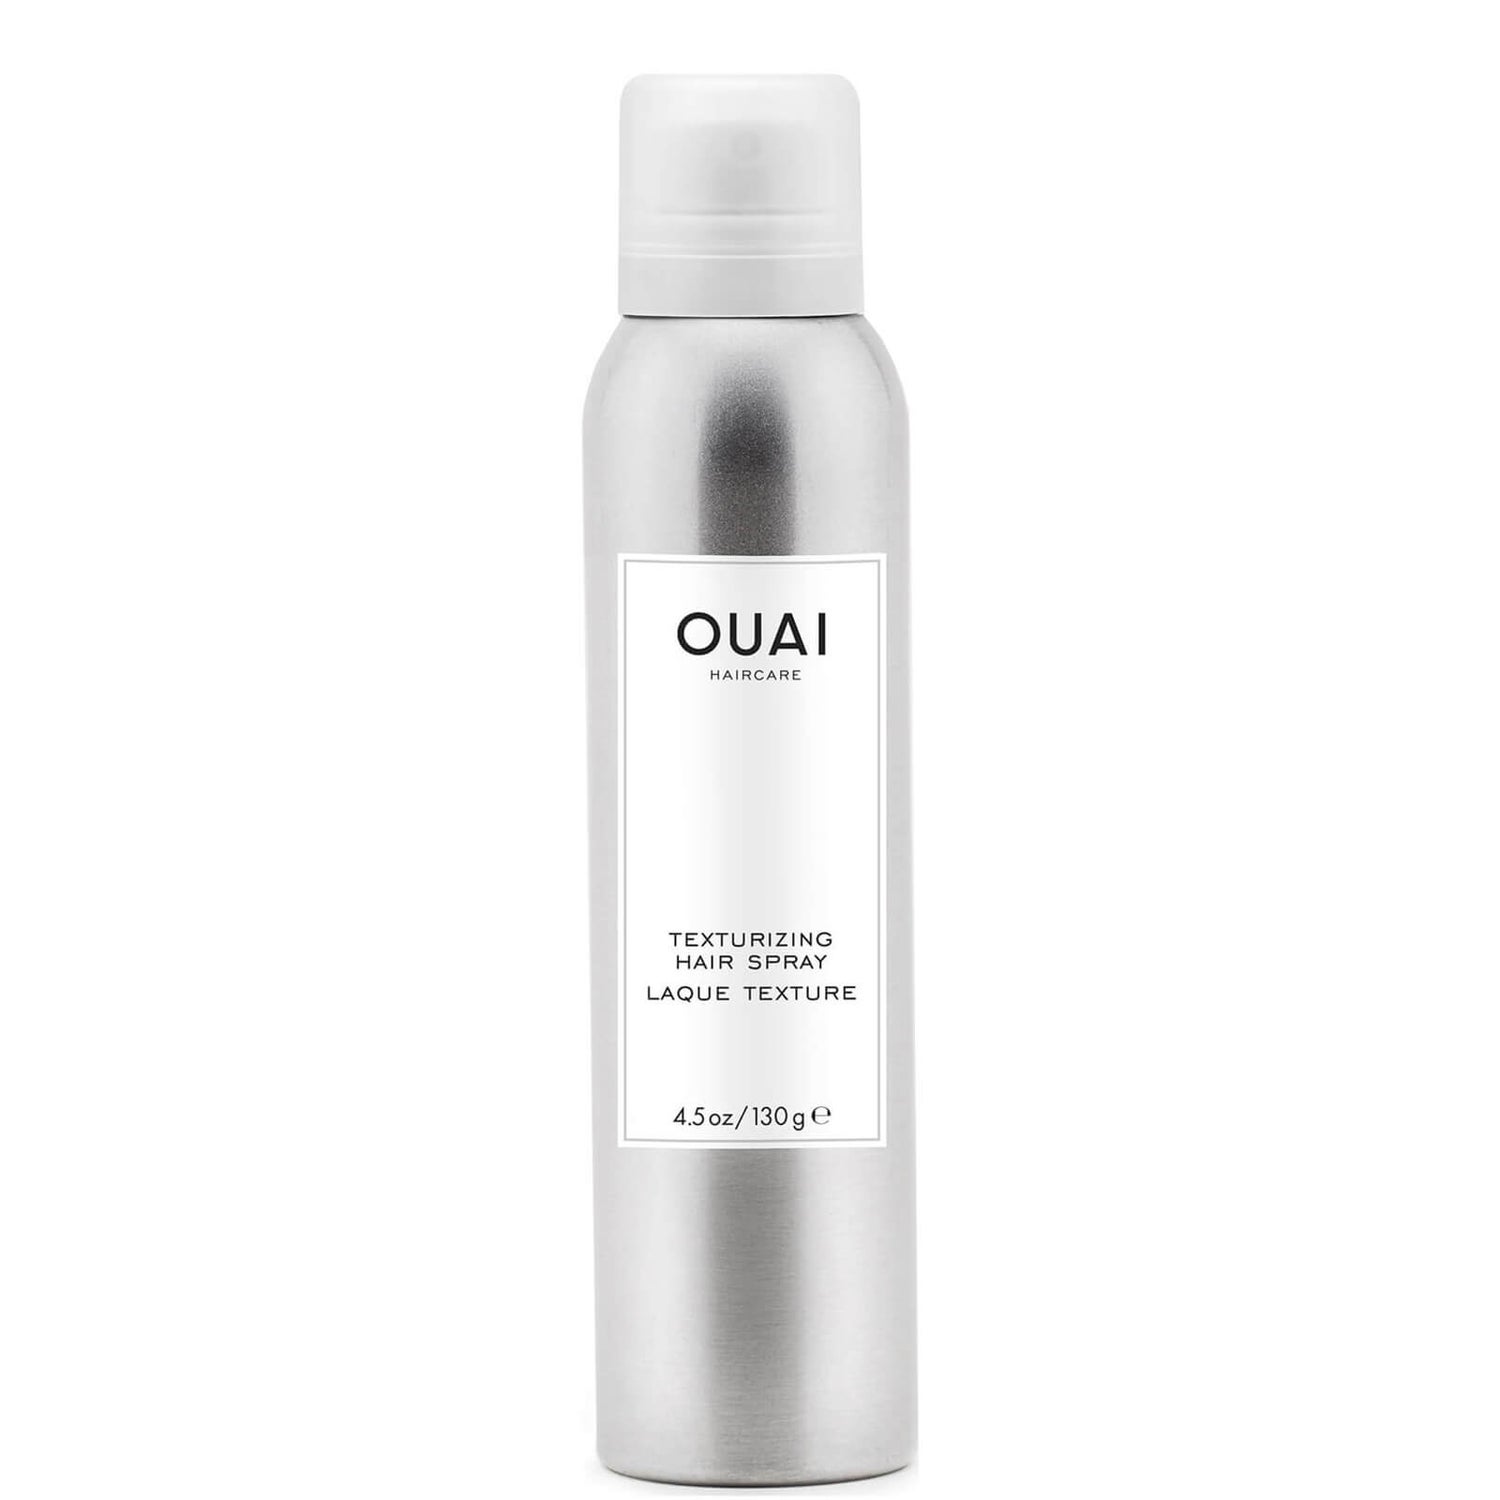 OUAI Texturizing Hair Spray 130g